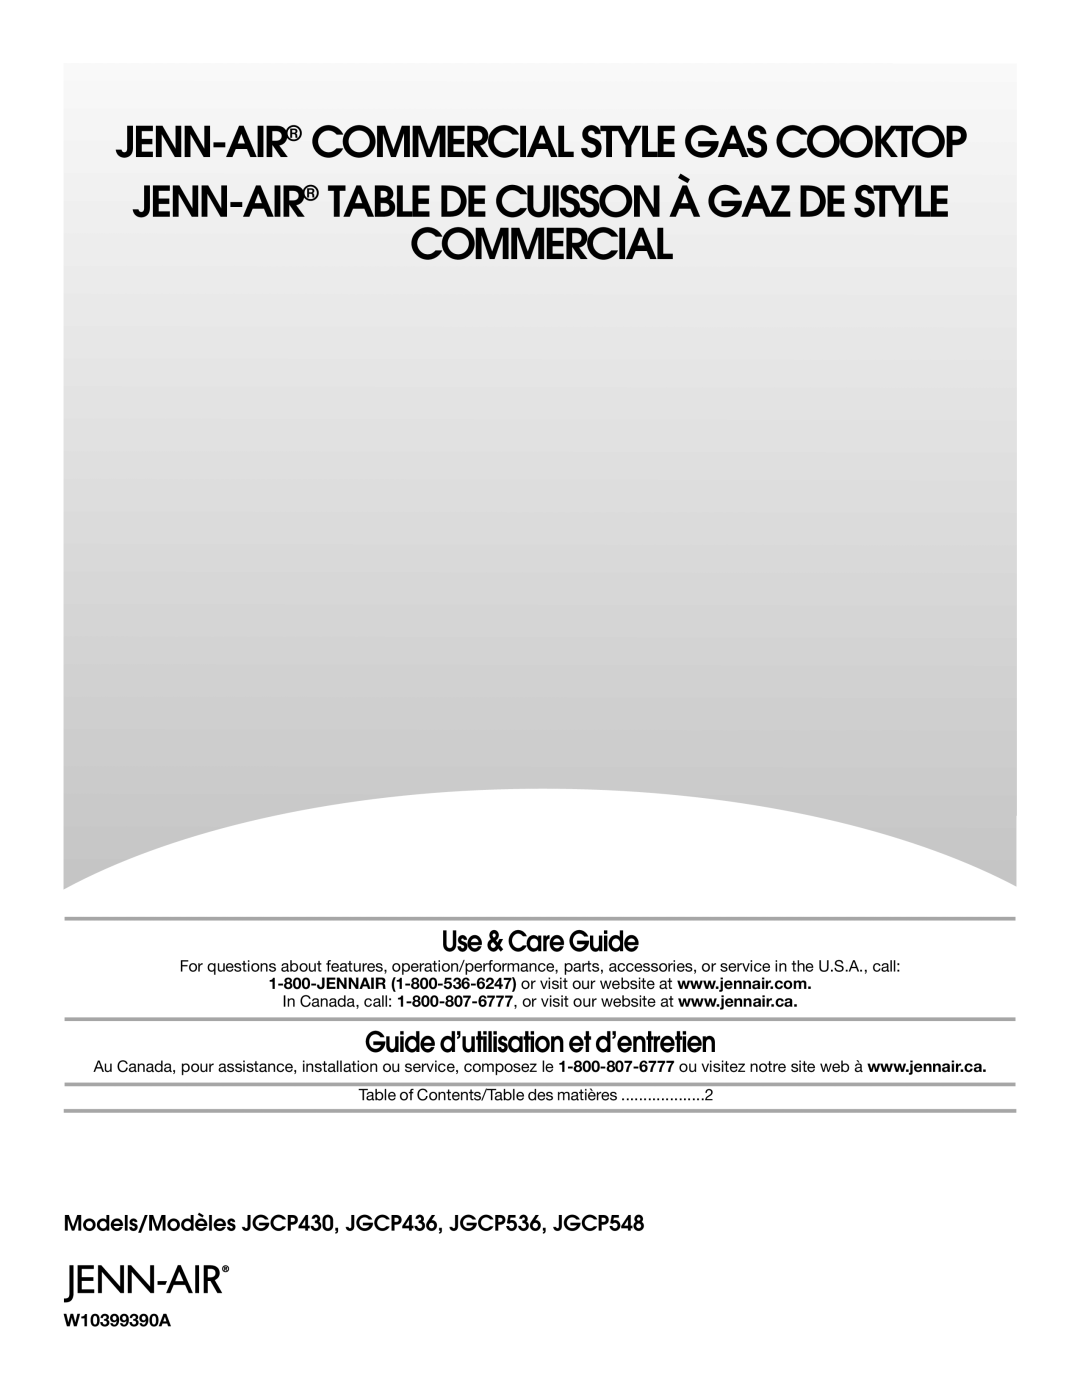 Jenn-Air JGCP536, JGCP548, JGCP436, JGCP430 manual Use & Care Guide, Guide d’utilisation et d’entretien, Commercial 